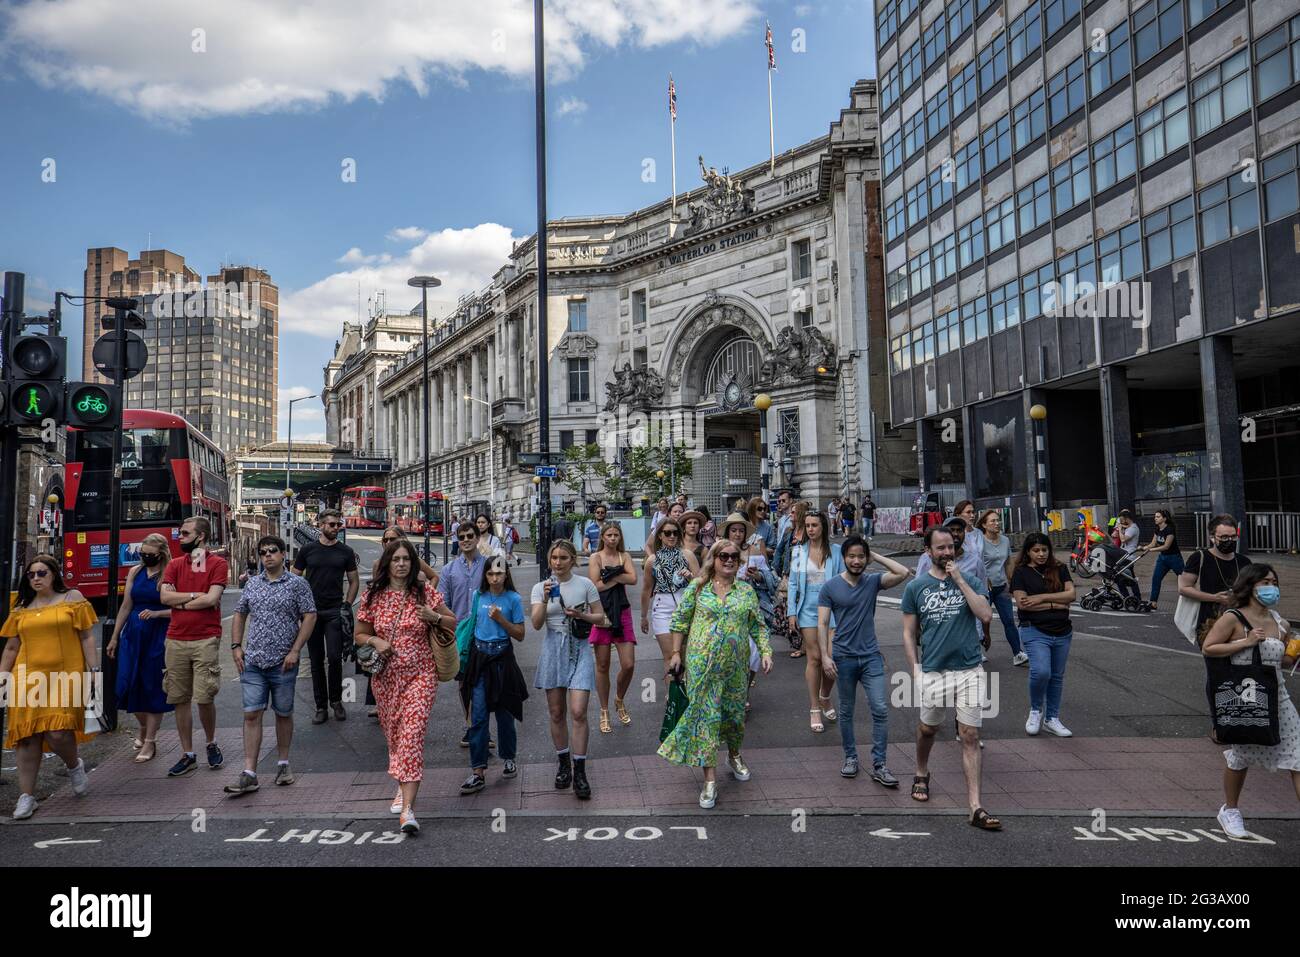 Am Fußgängerübergang versammeln sich Menschen, nachdem sie für einen Samstagabend in Waterloo, Central London, Großbritannien, eingefahren sind Stockfoto